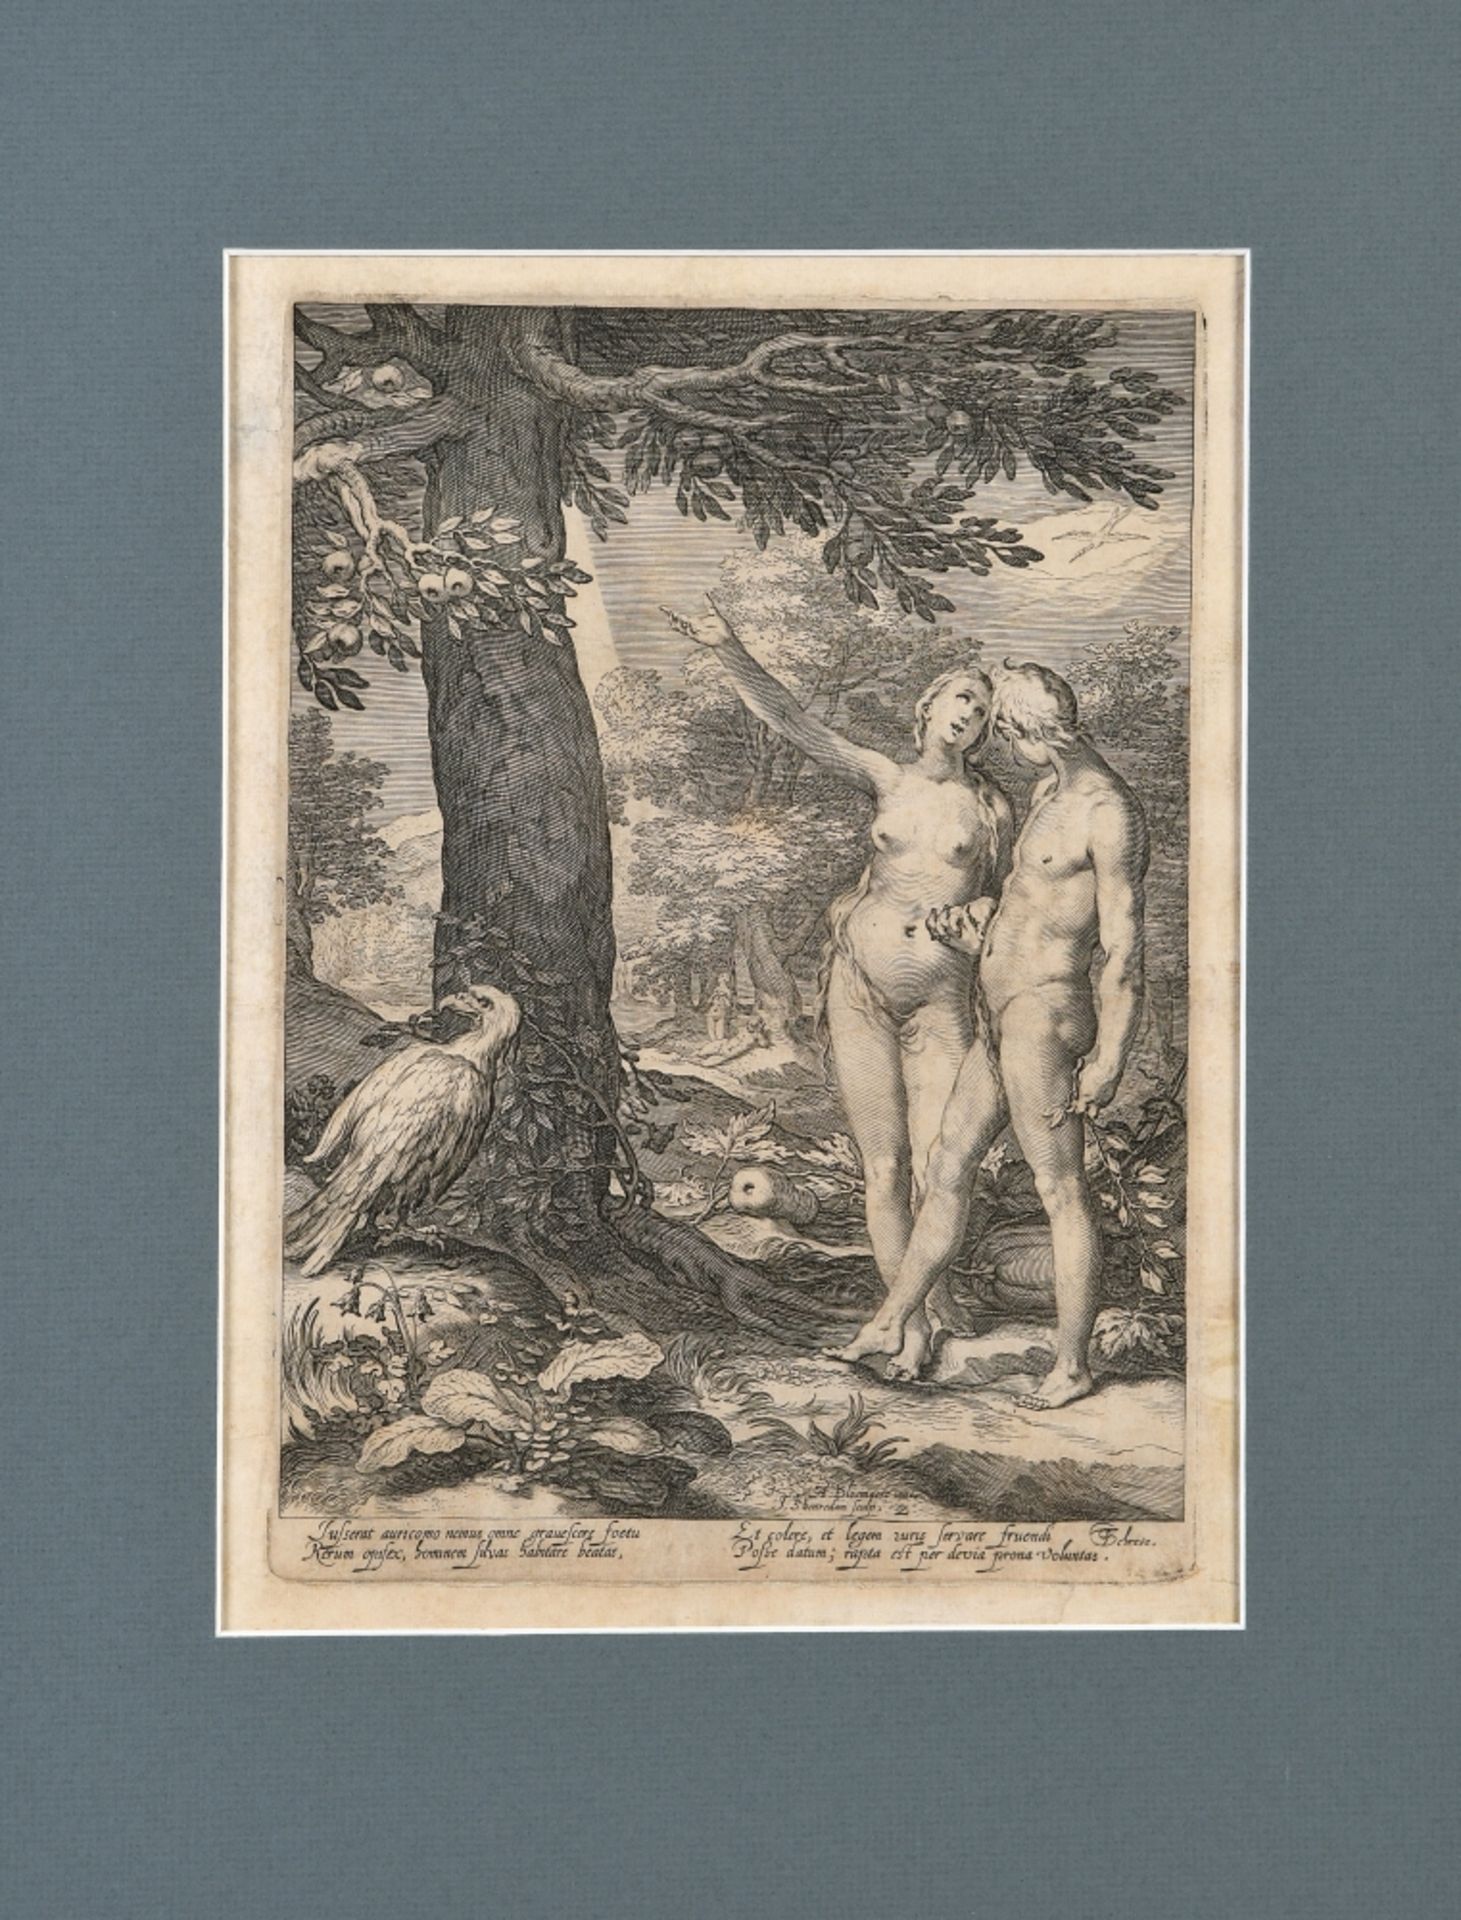 Bloemaert, Abraham, 1564 Gorinchem - 1651 Utrecht